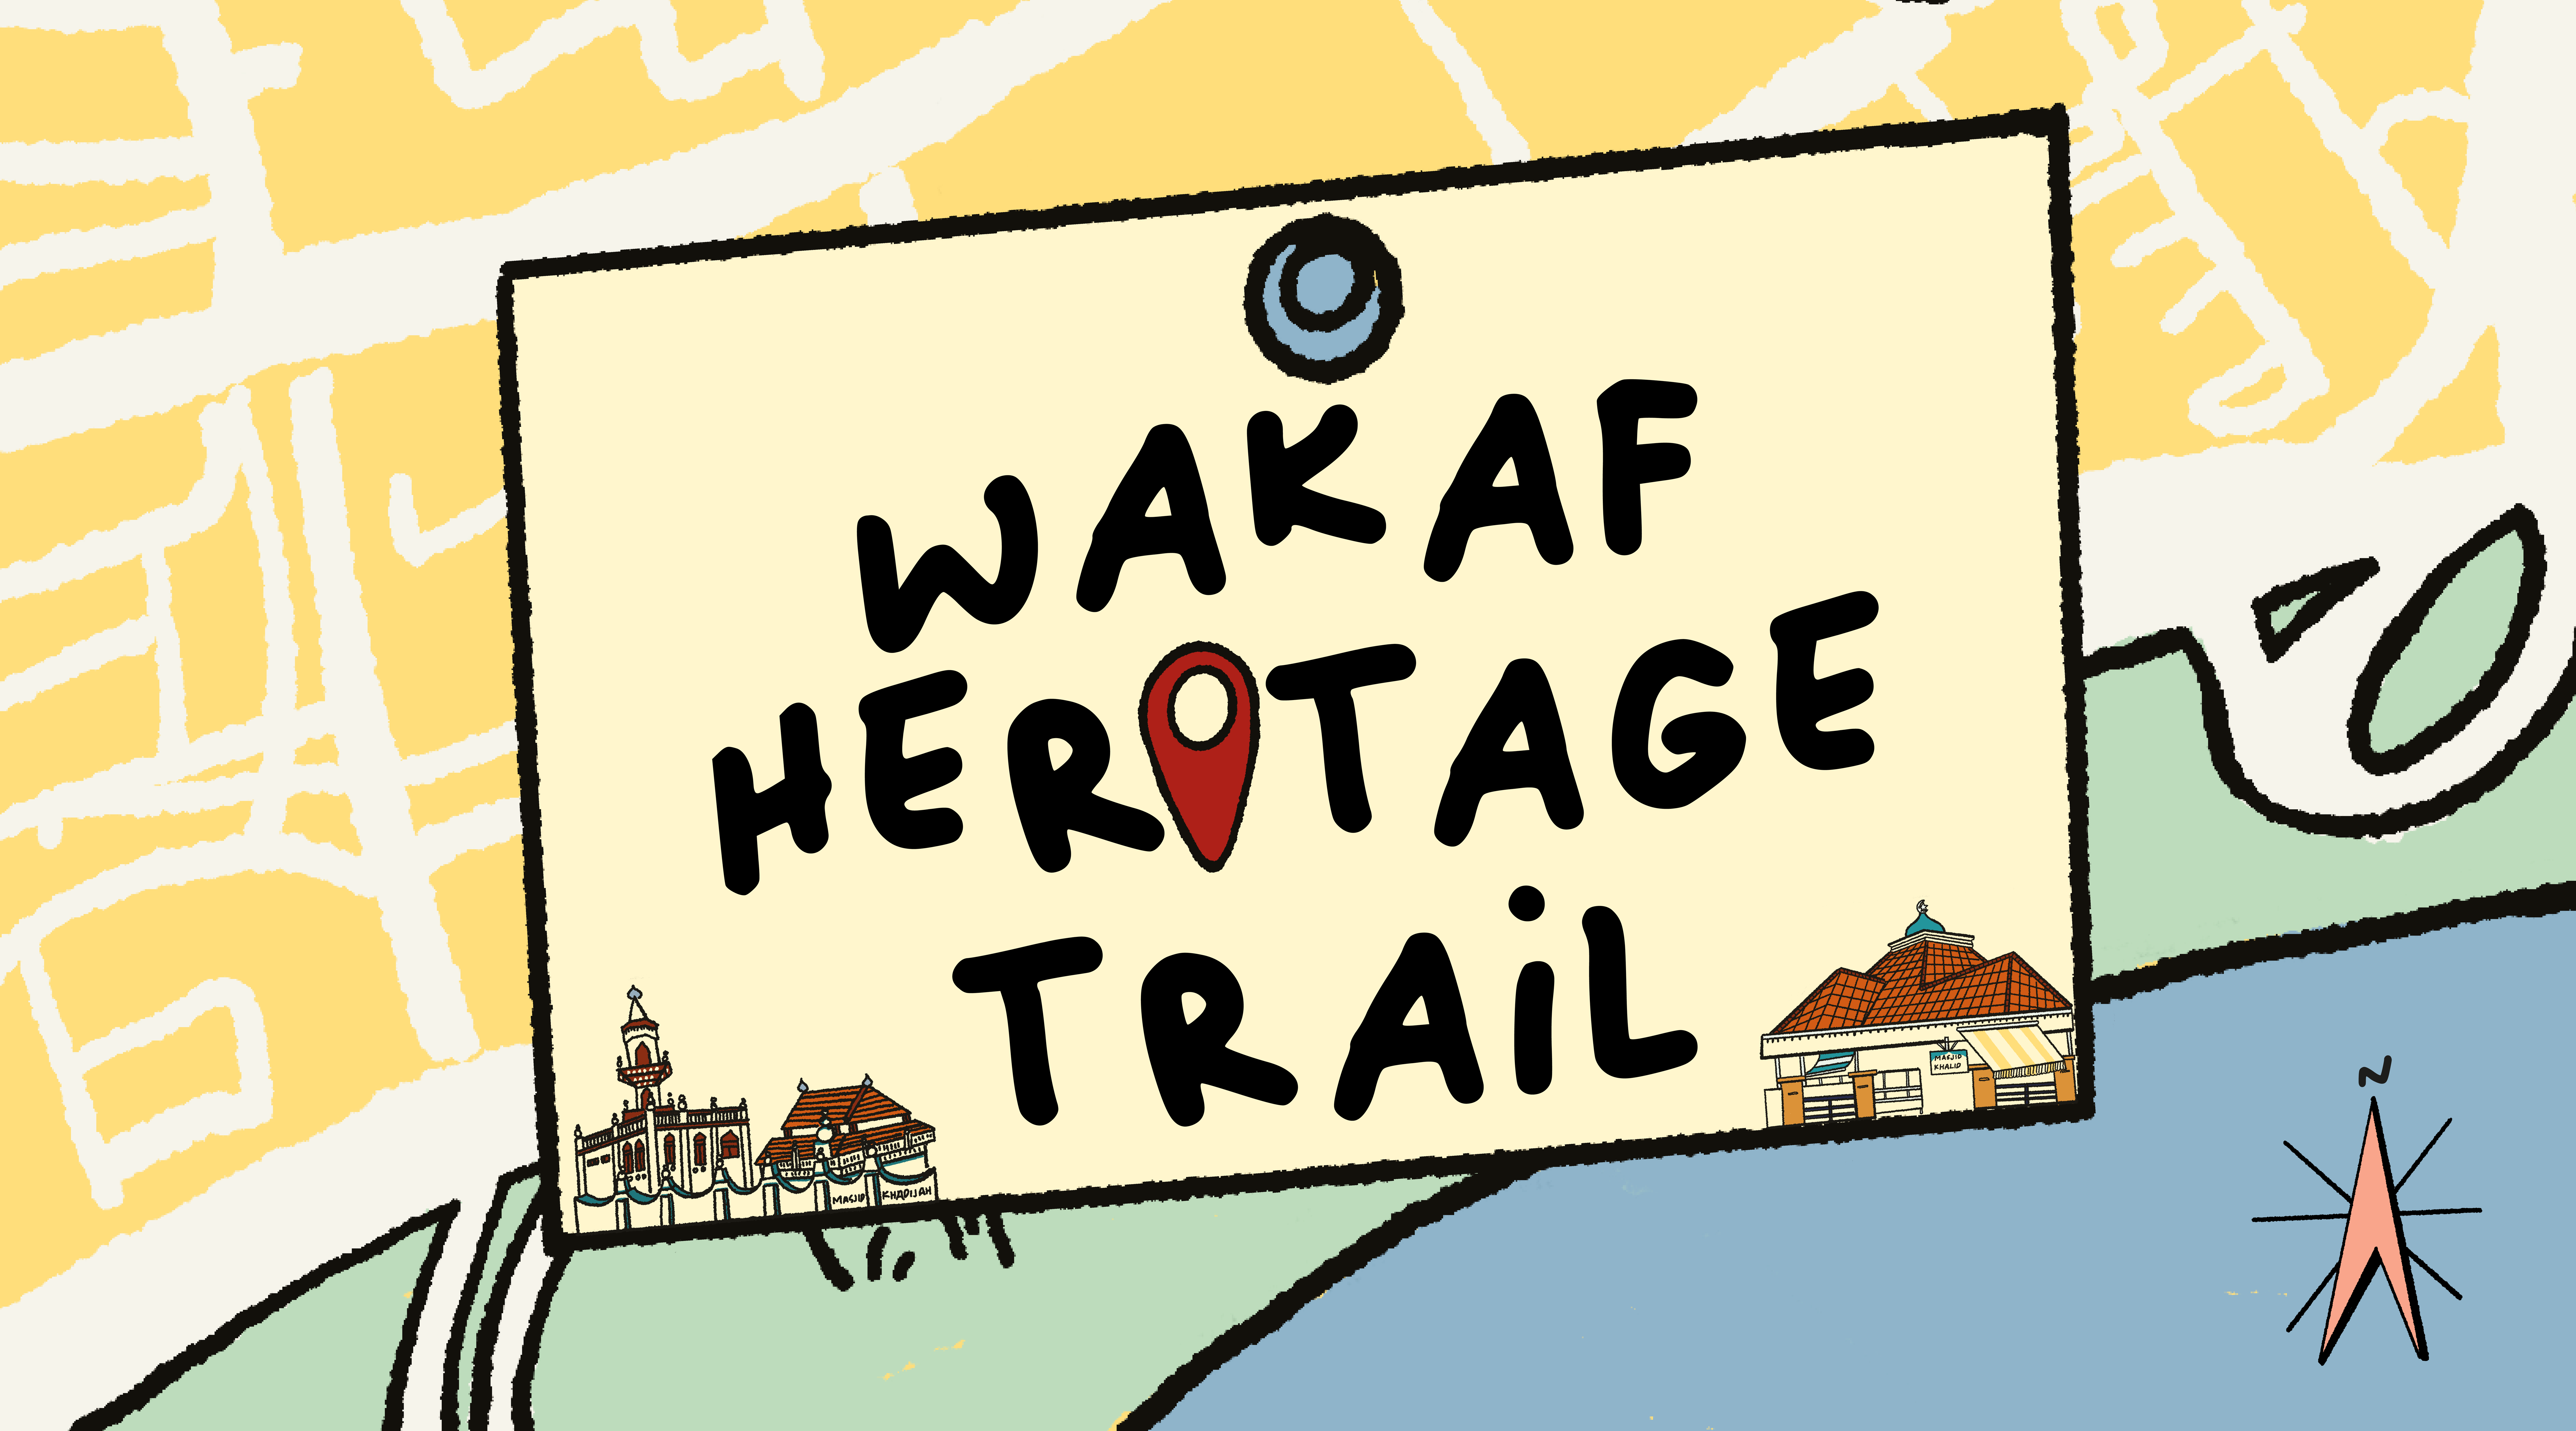 Wakaf Heritage Trail